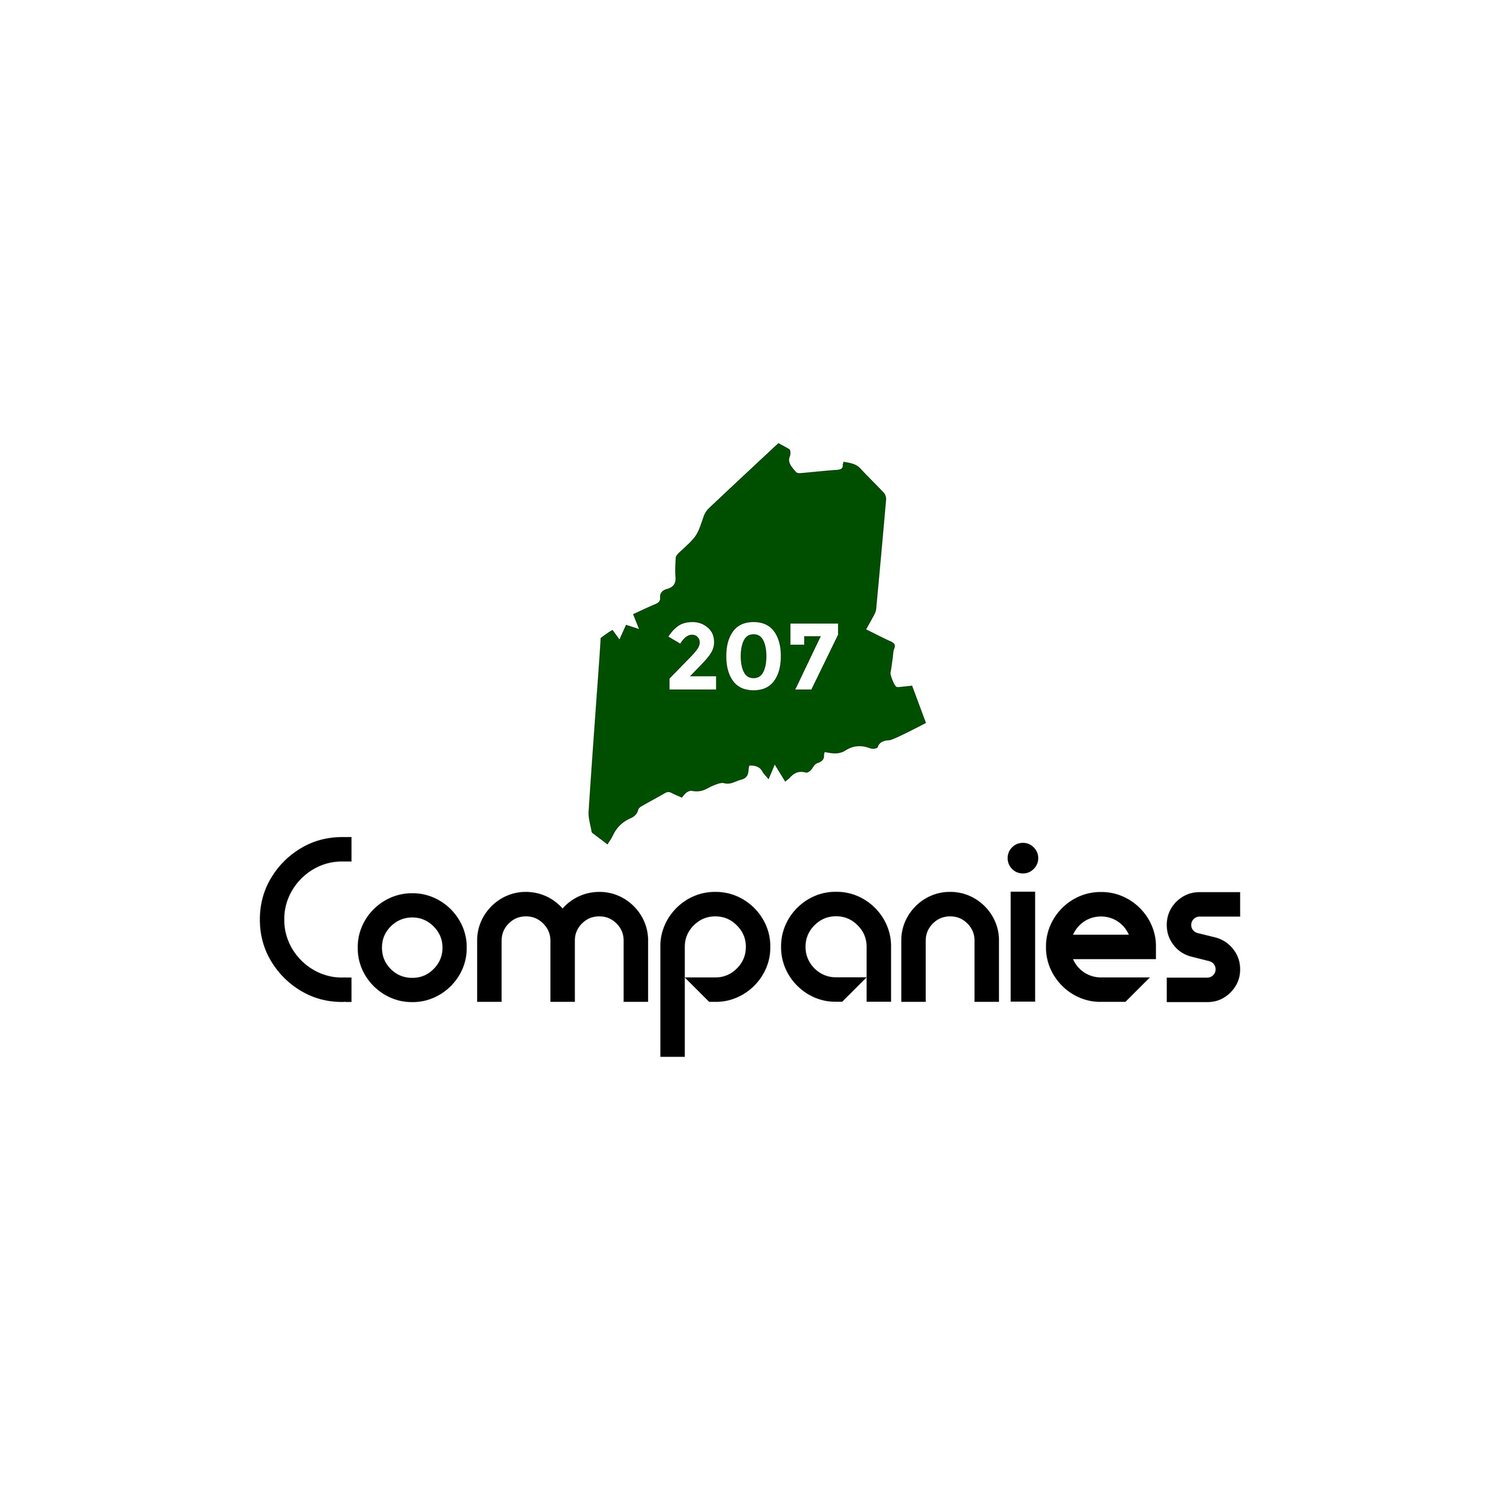 207 Companies